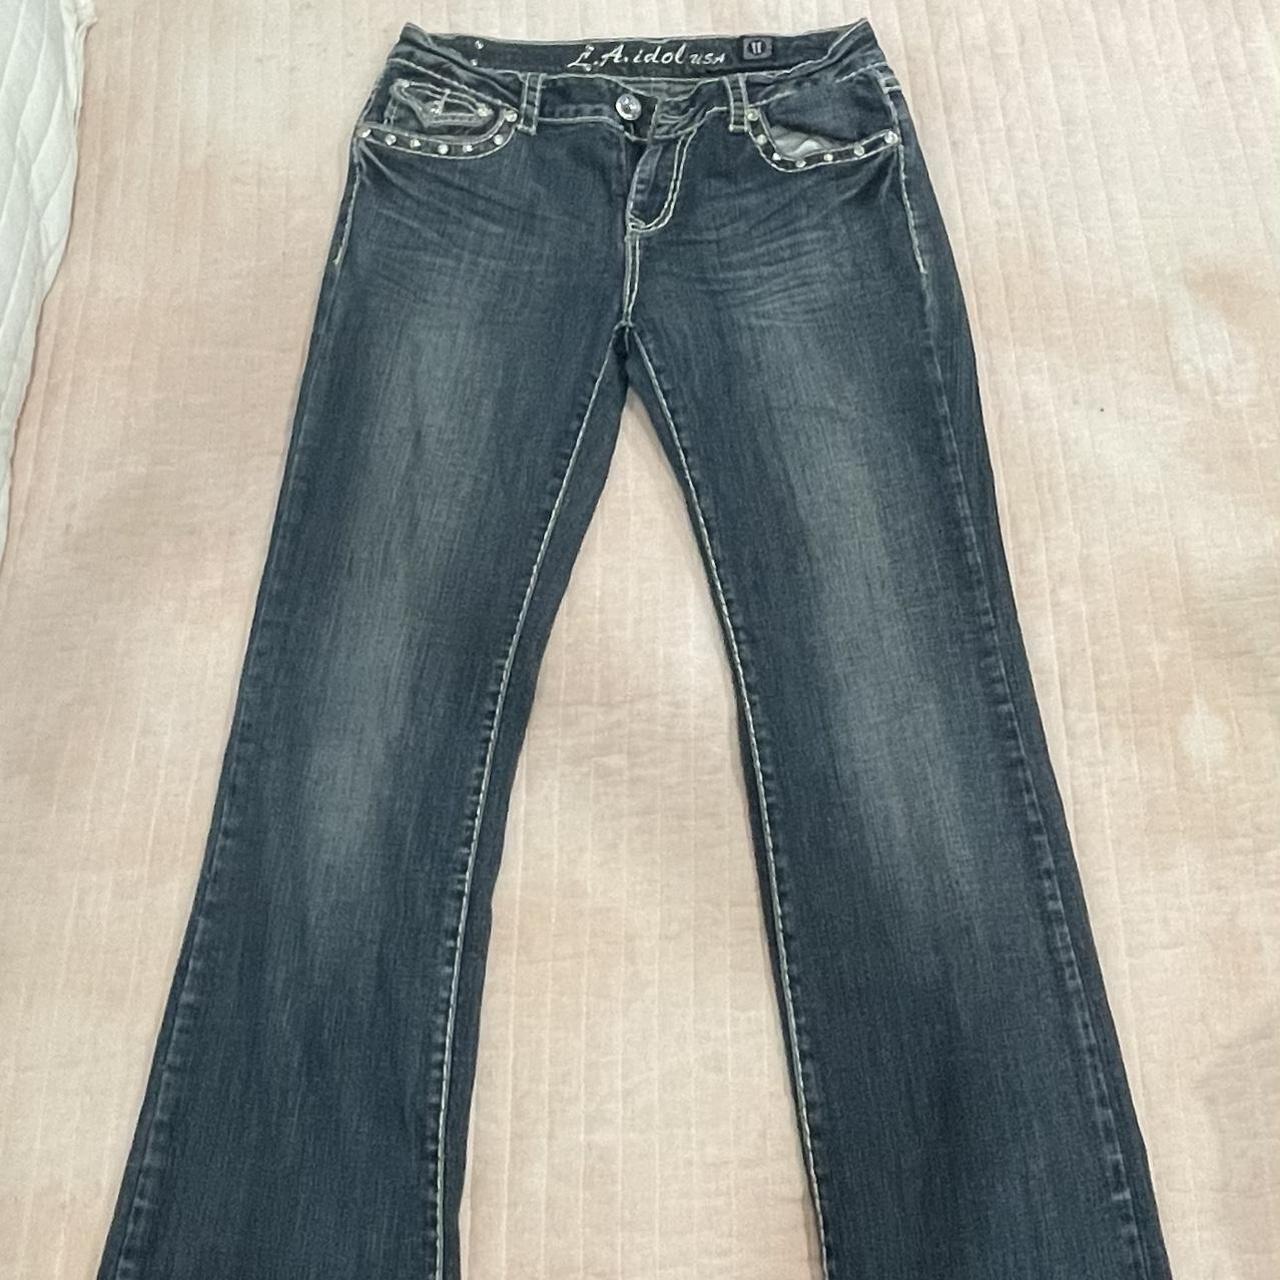 Flared y2k jeans studded pockets size 11 - Depop